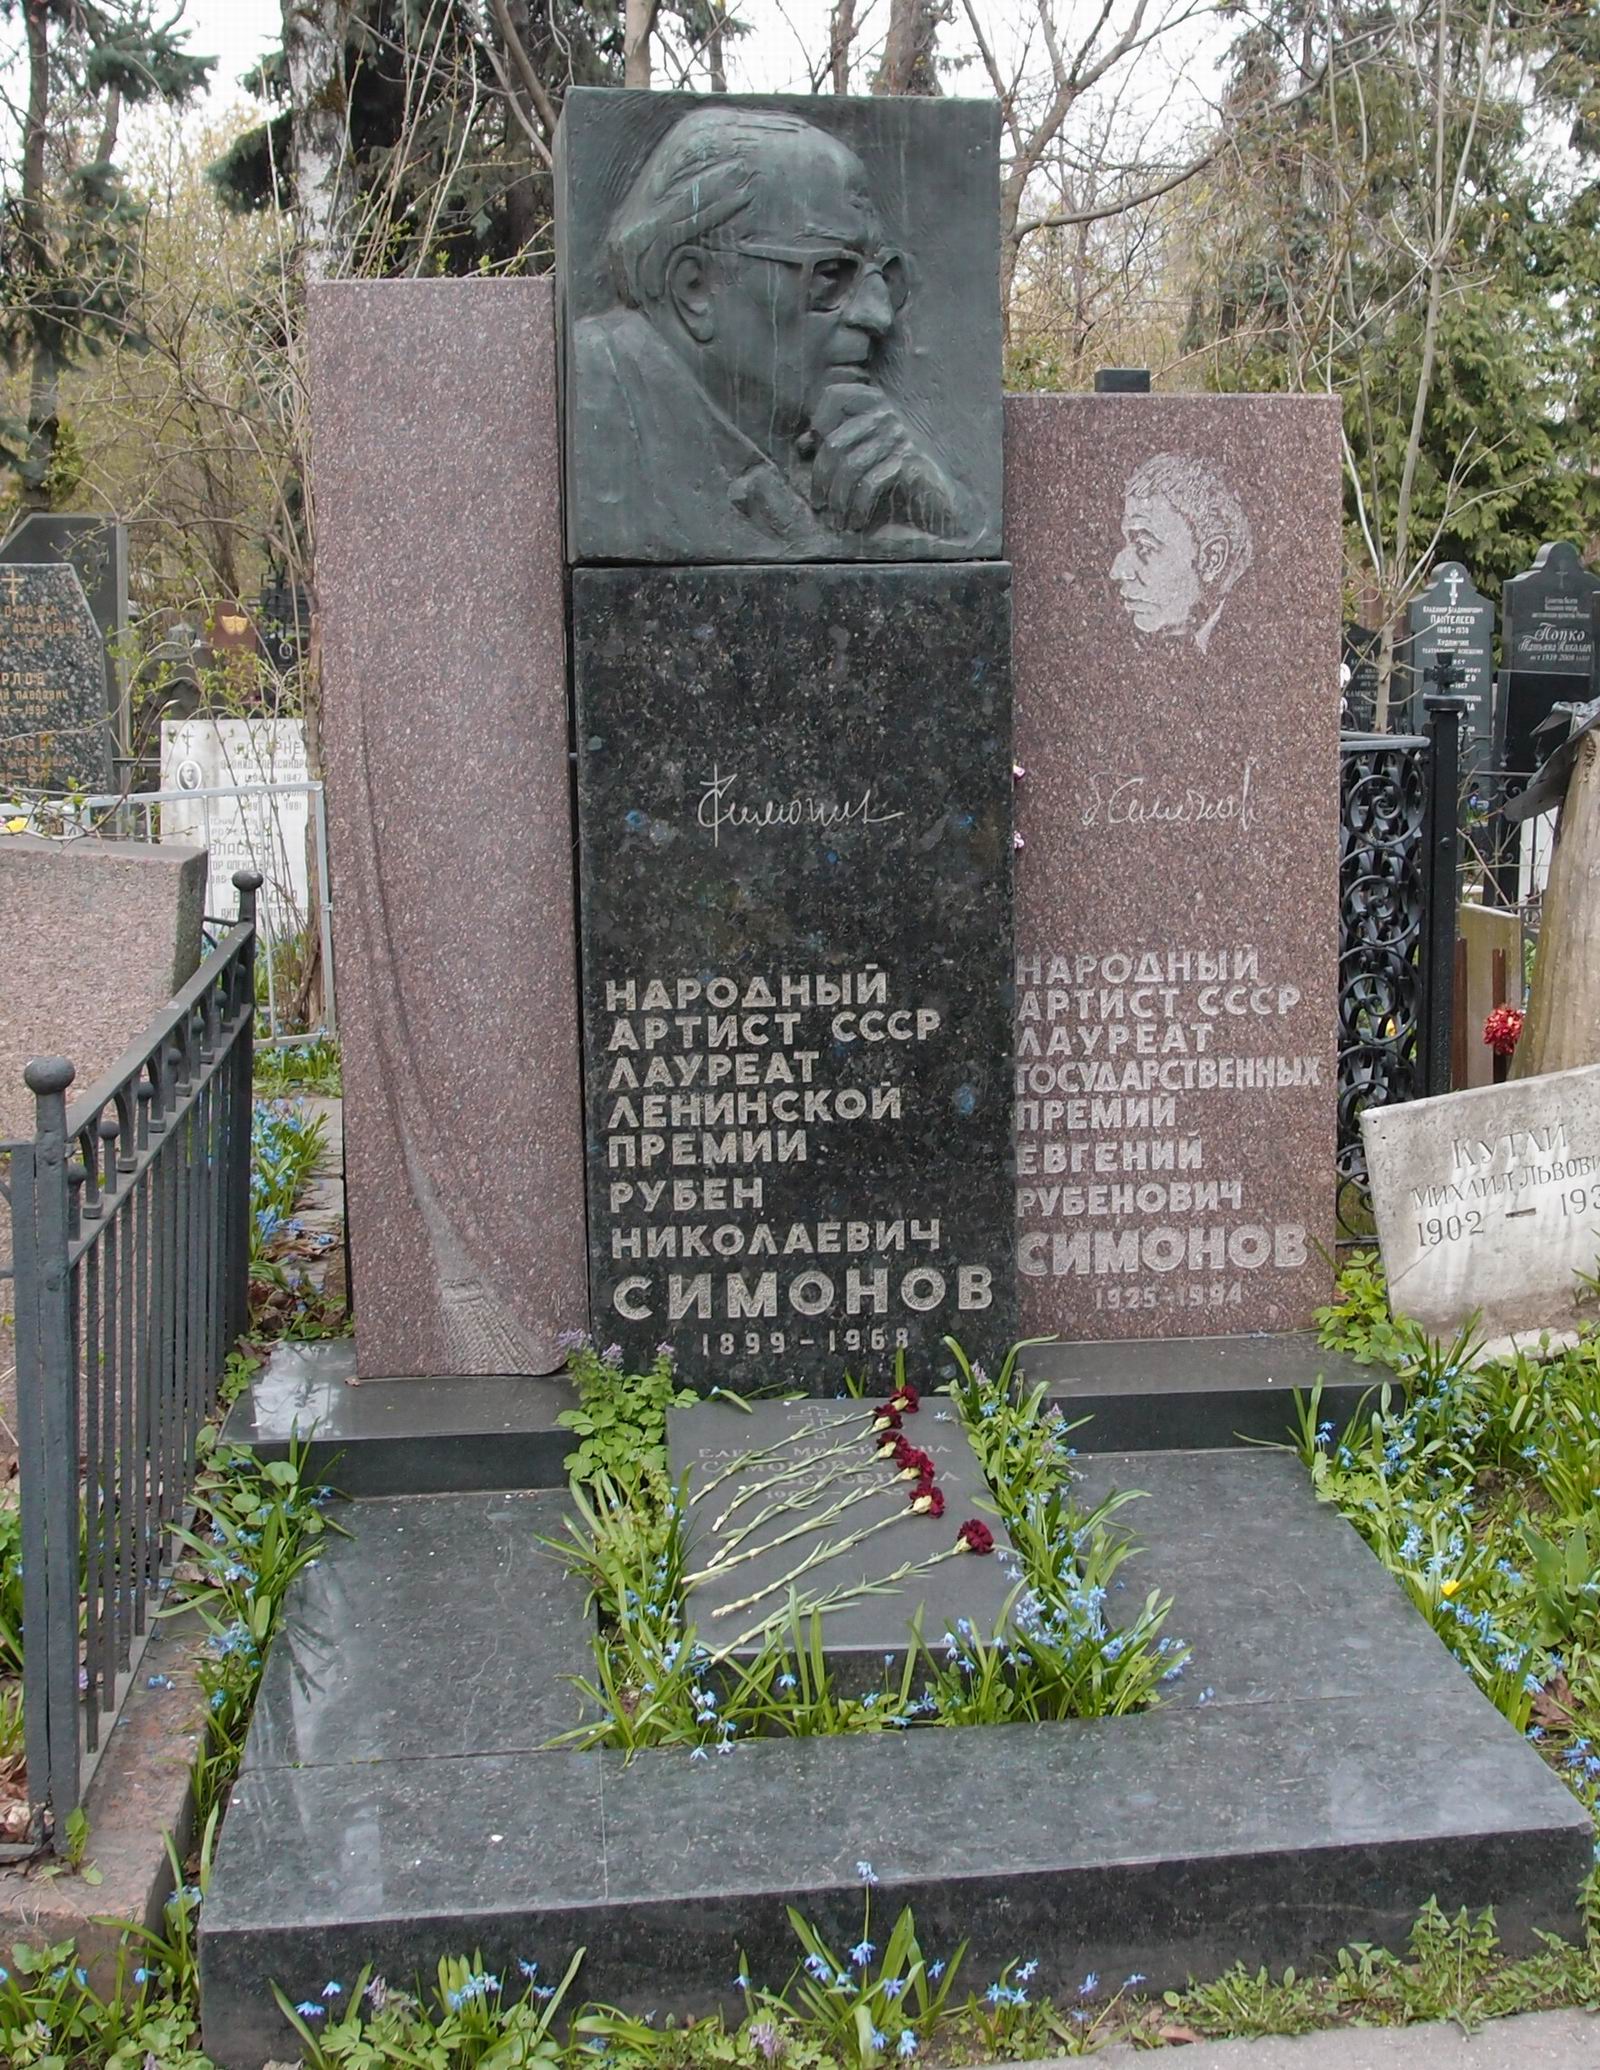 Памятник на могиле Симонова Р.Н. (1899–1968), ск. Н.Никогосян, арх. Т.Никогосян, на Новодевичьем кладбище (2–20–9).